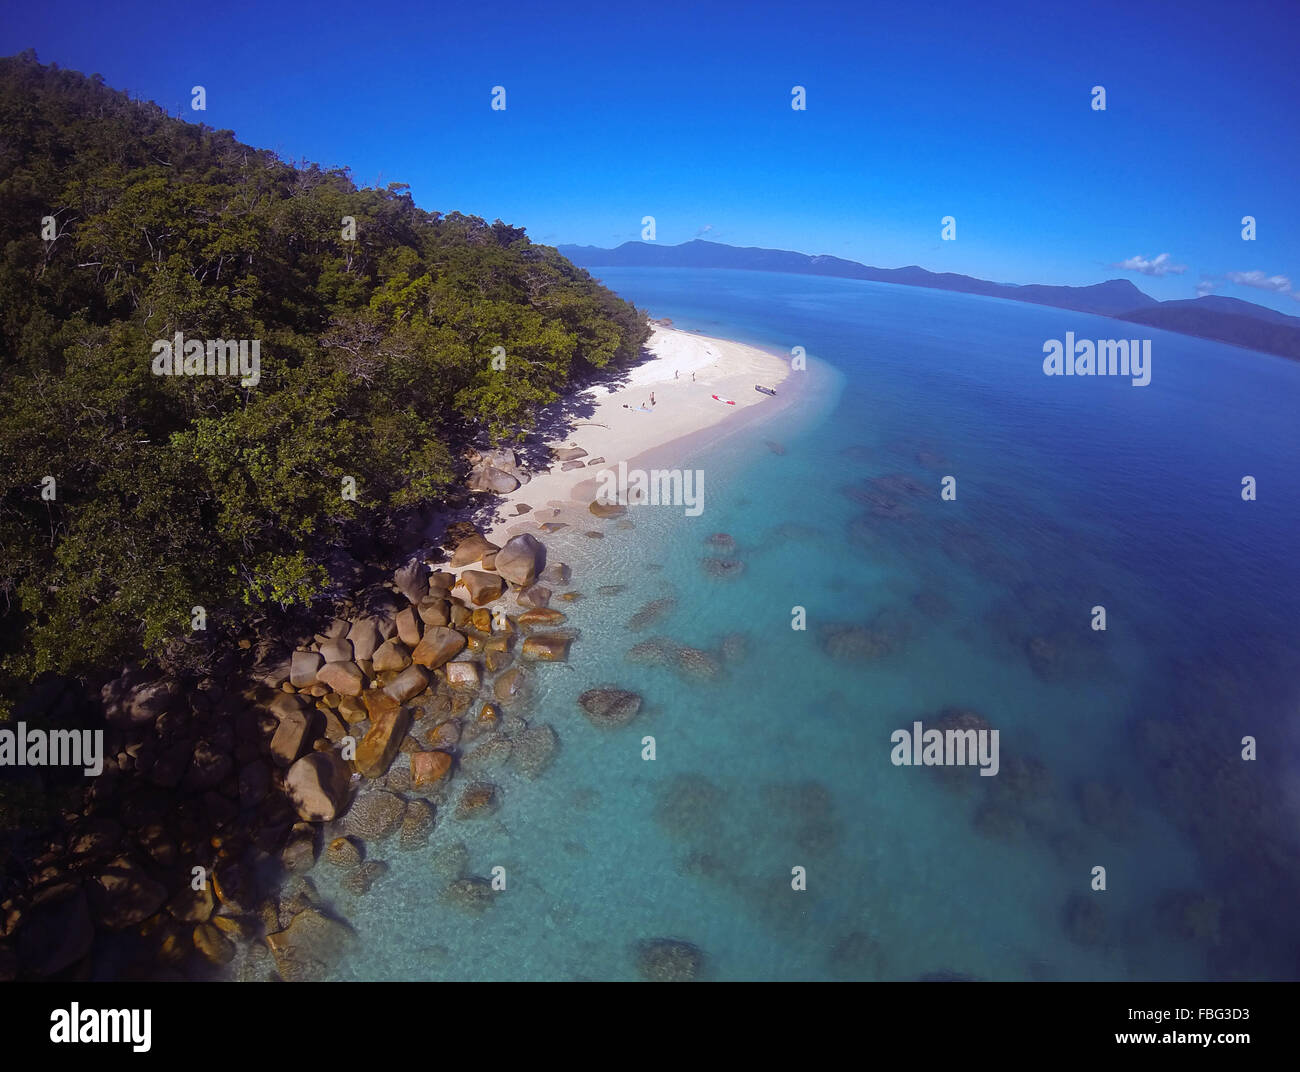 Plage et des récifs de l'île de Fitzroy, sur la Grande Barrière de Corail, avec la côte nord du Queensland en Australie, l'arrière-plan Banque D'Images